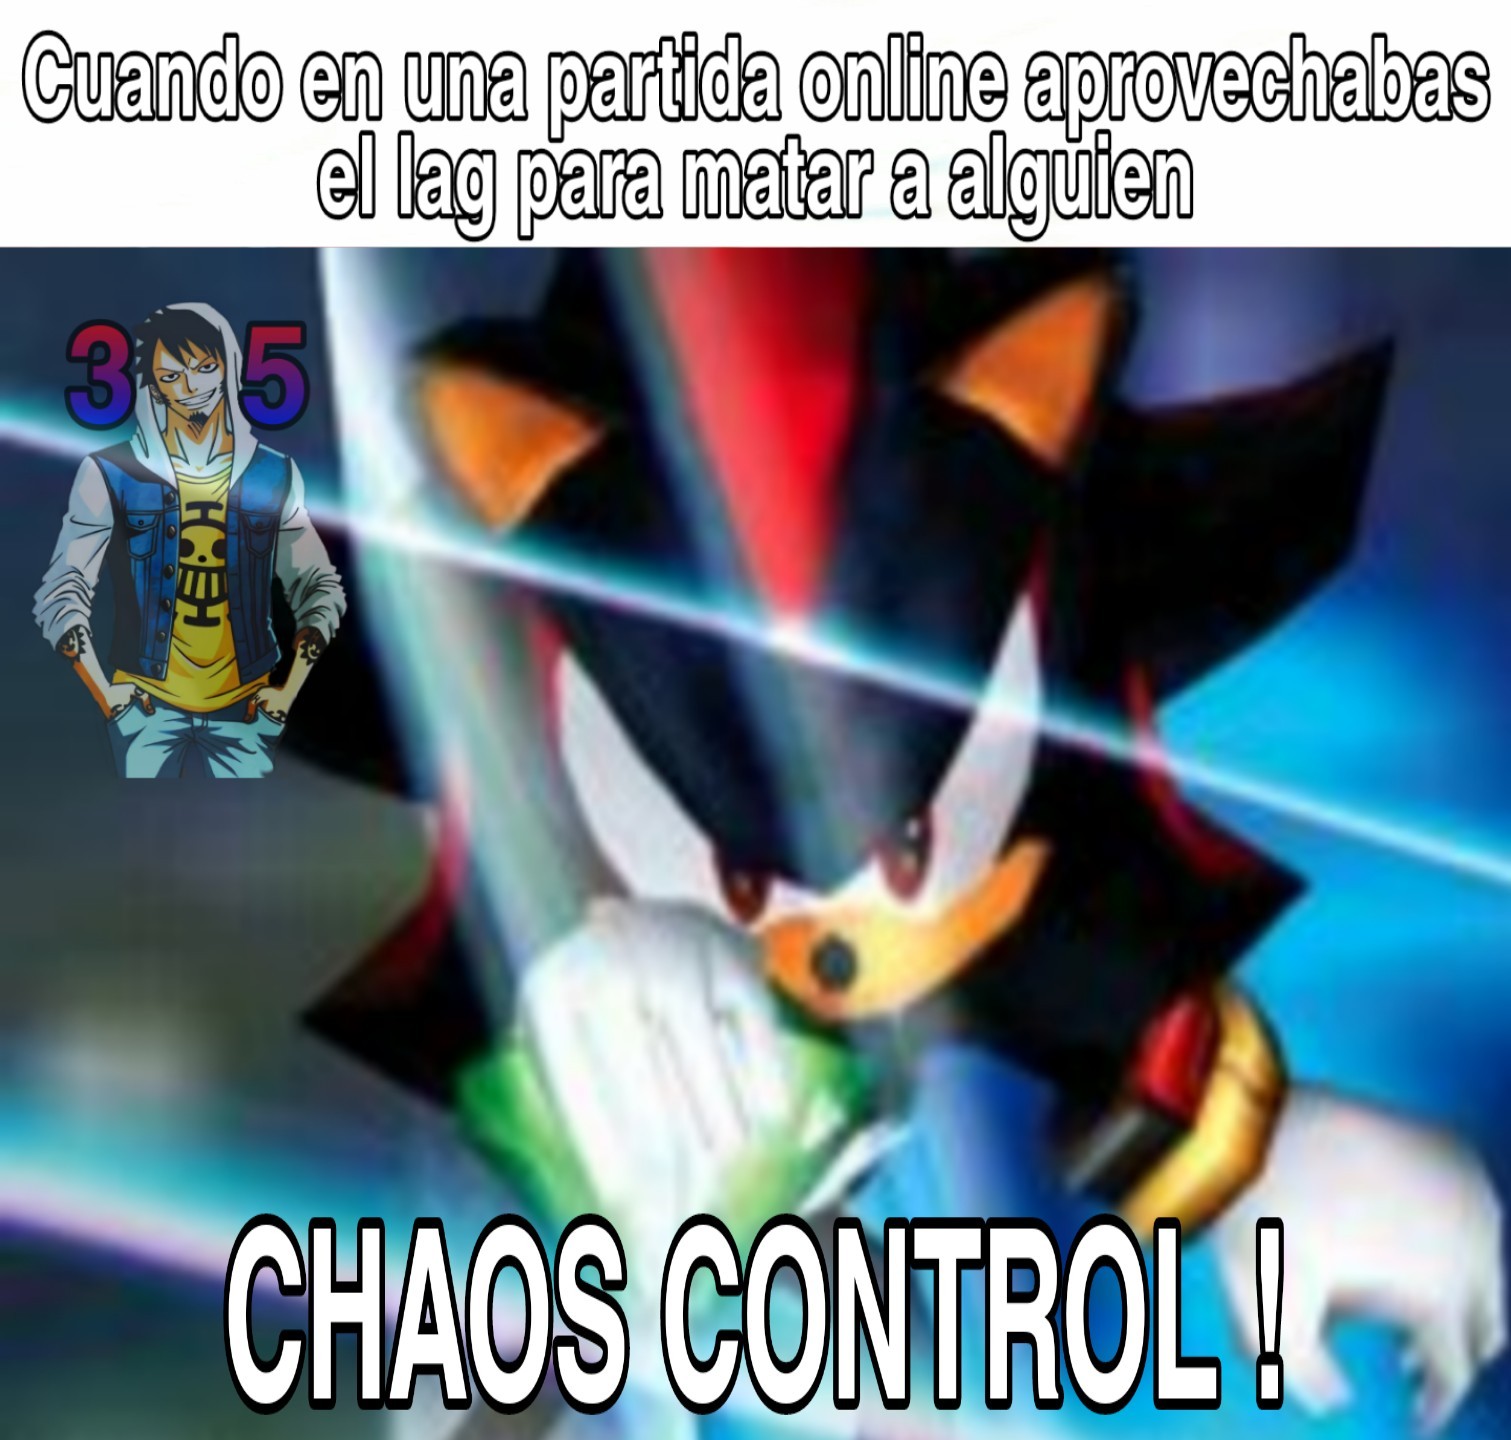 Memes do Sonic contra a humanidade (@MemesdoSonic1) / X